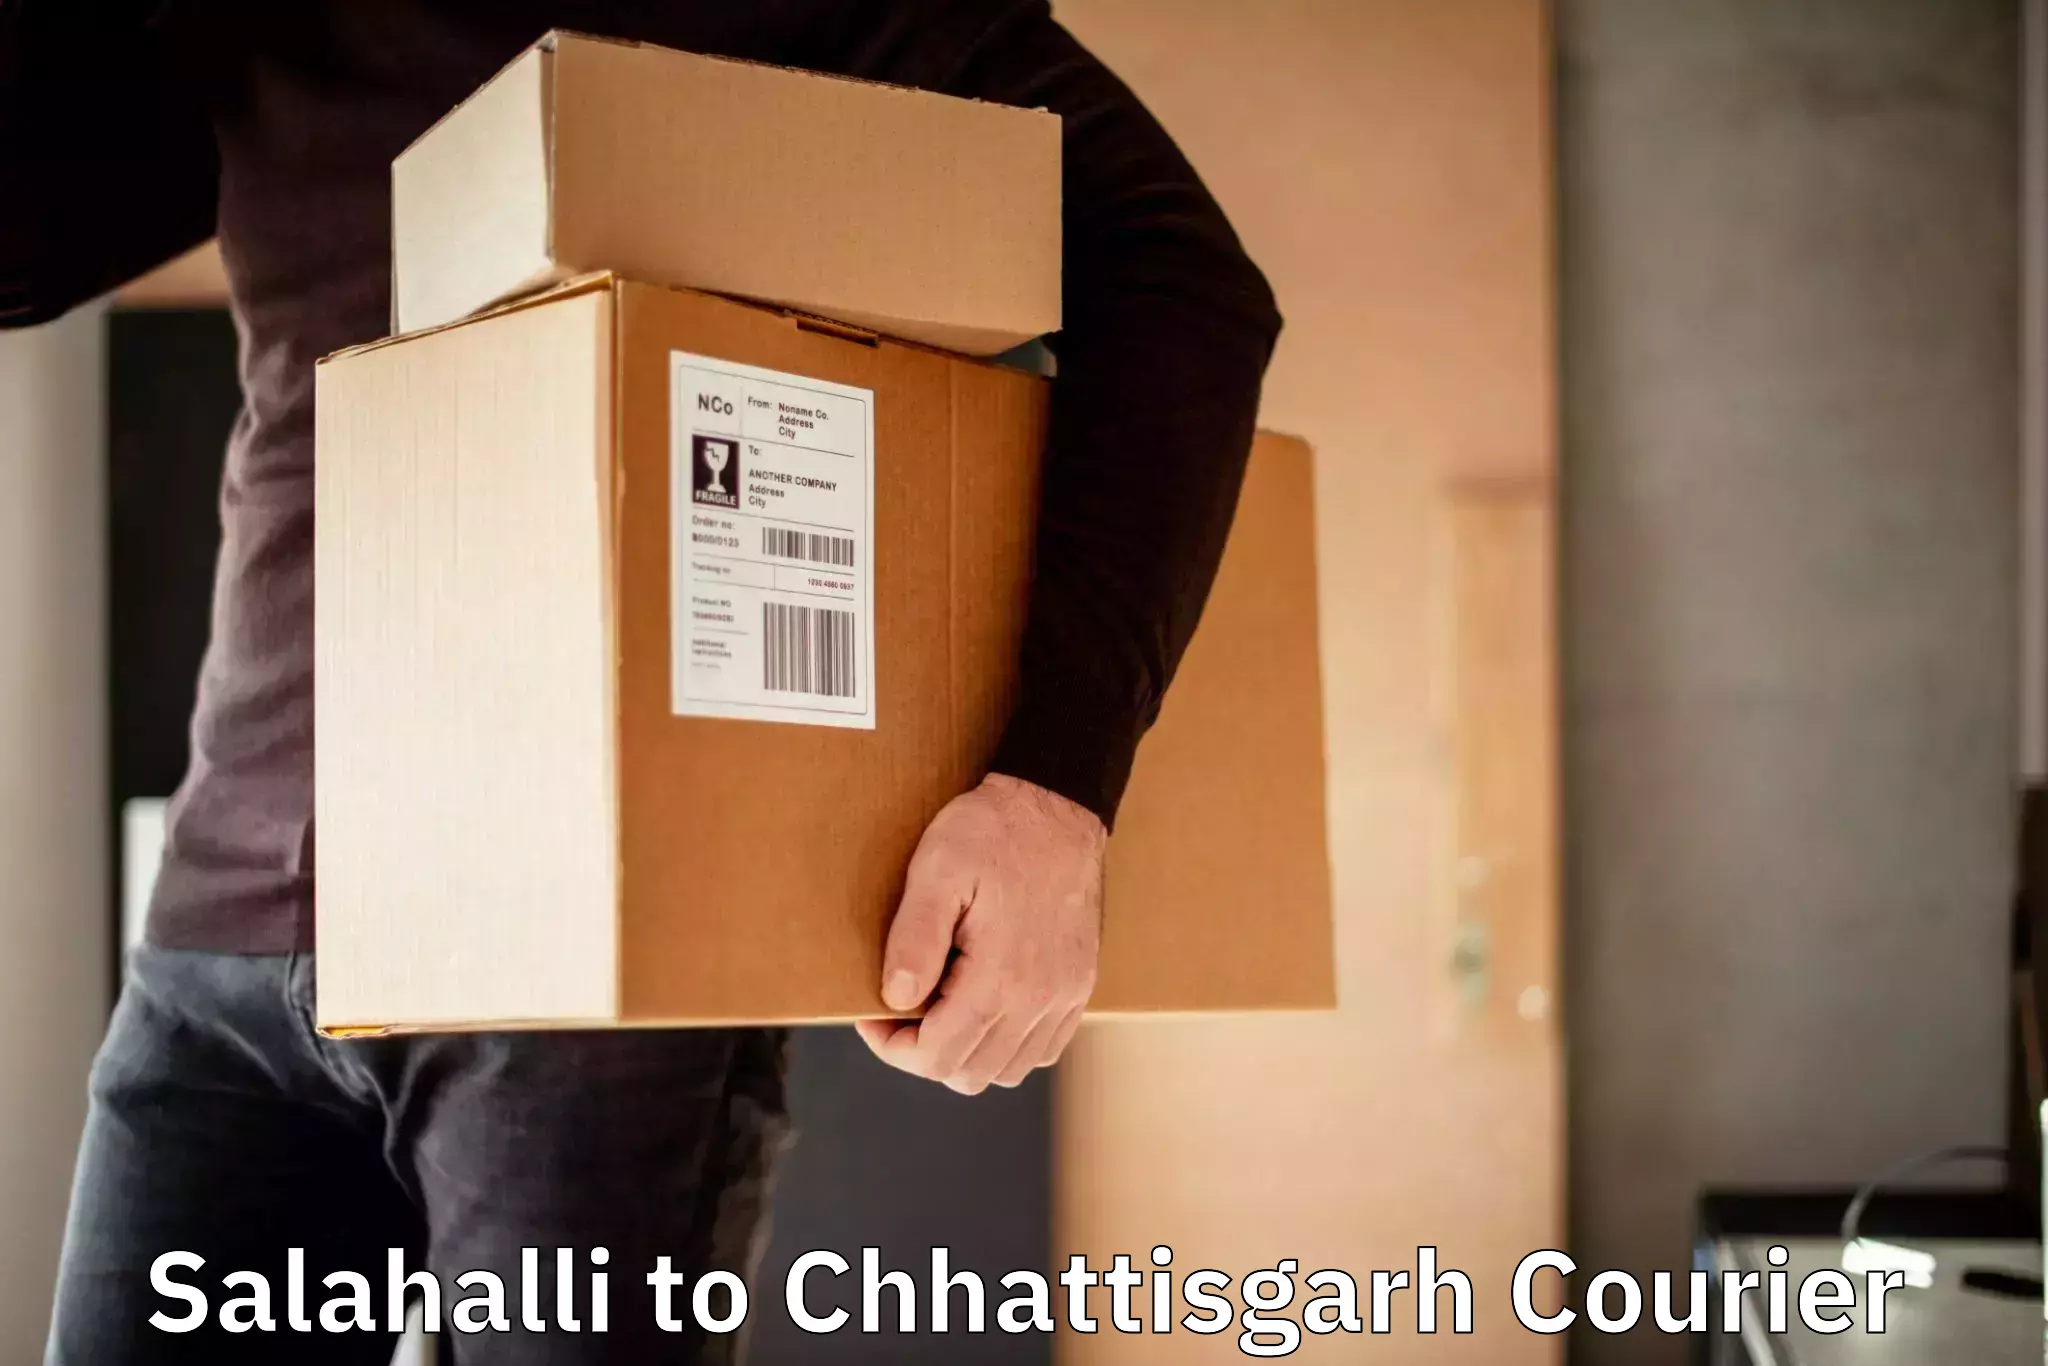 Sustainable courier practices Salahalli to Korea Chhattisgarh